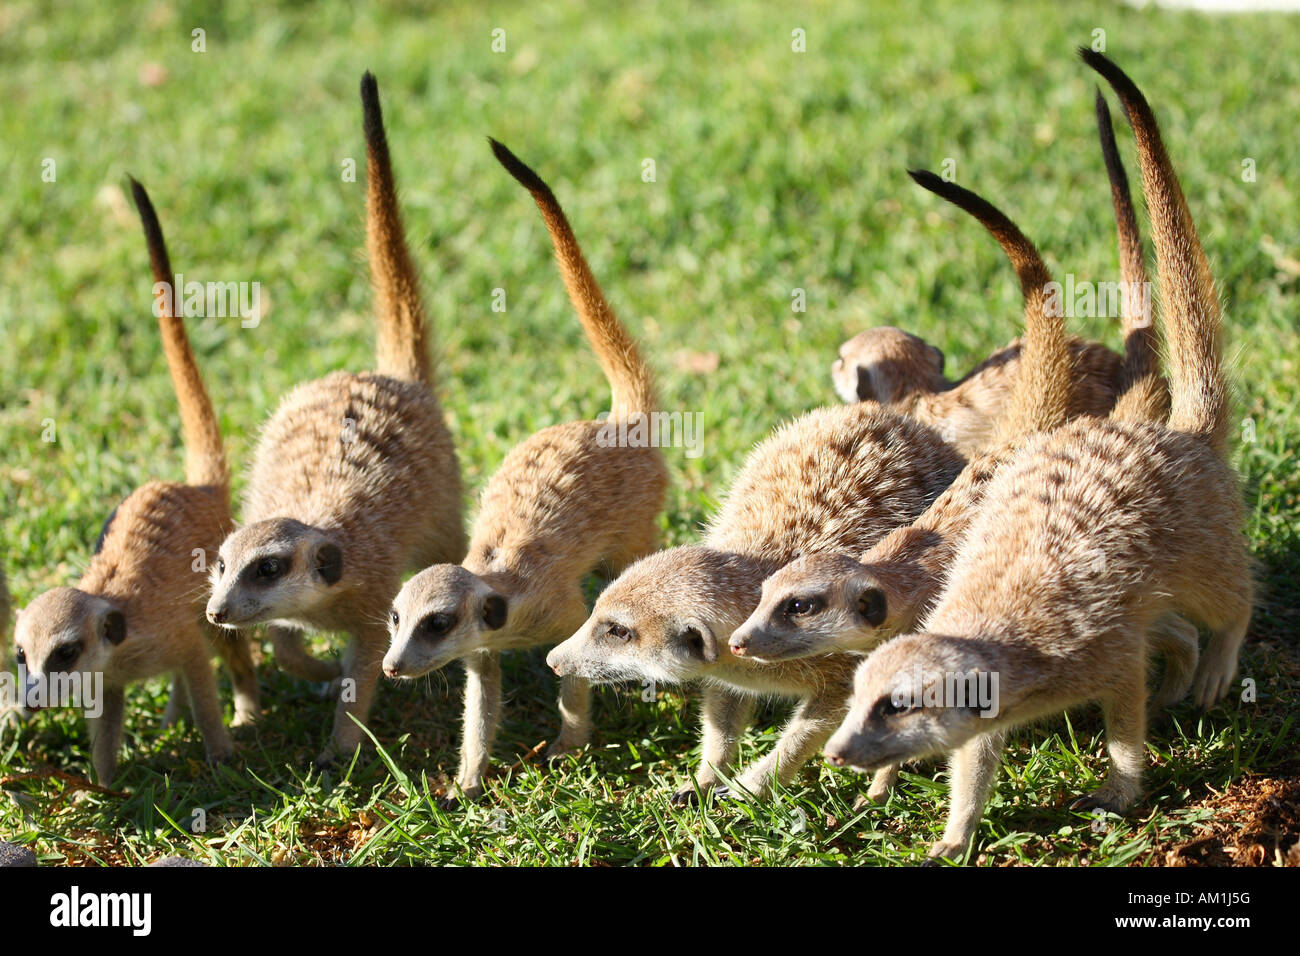 Meerkats (Suricata suricatta) Stock Photo